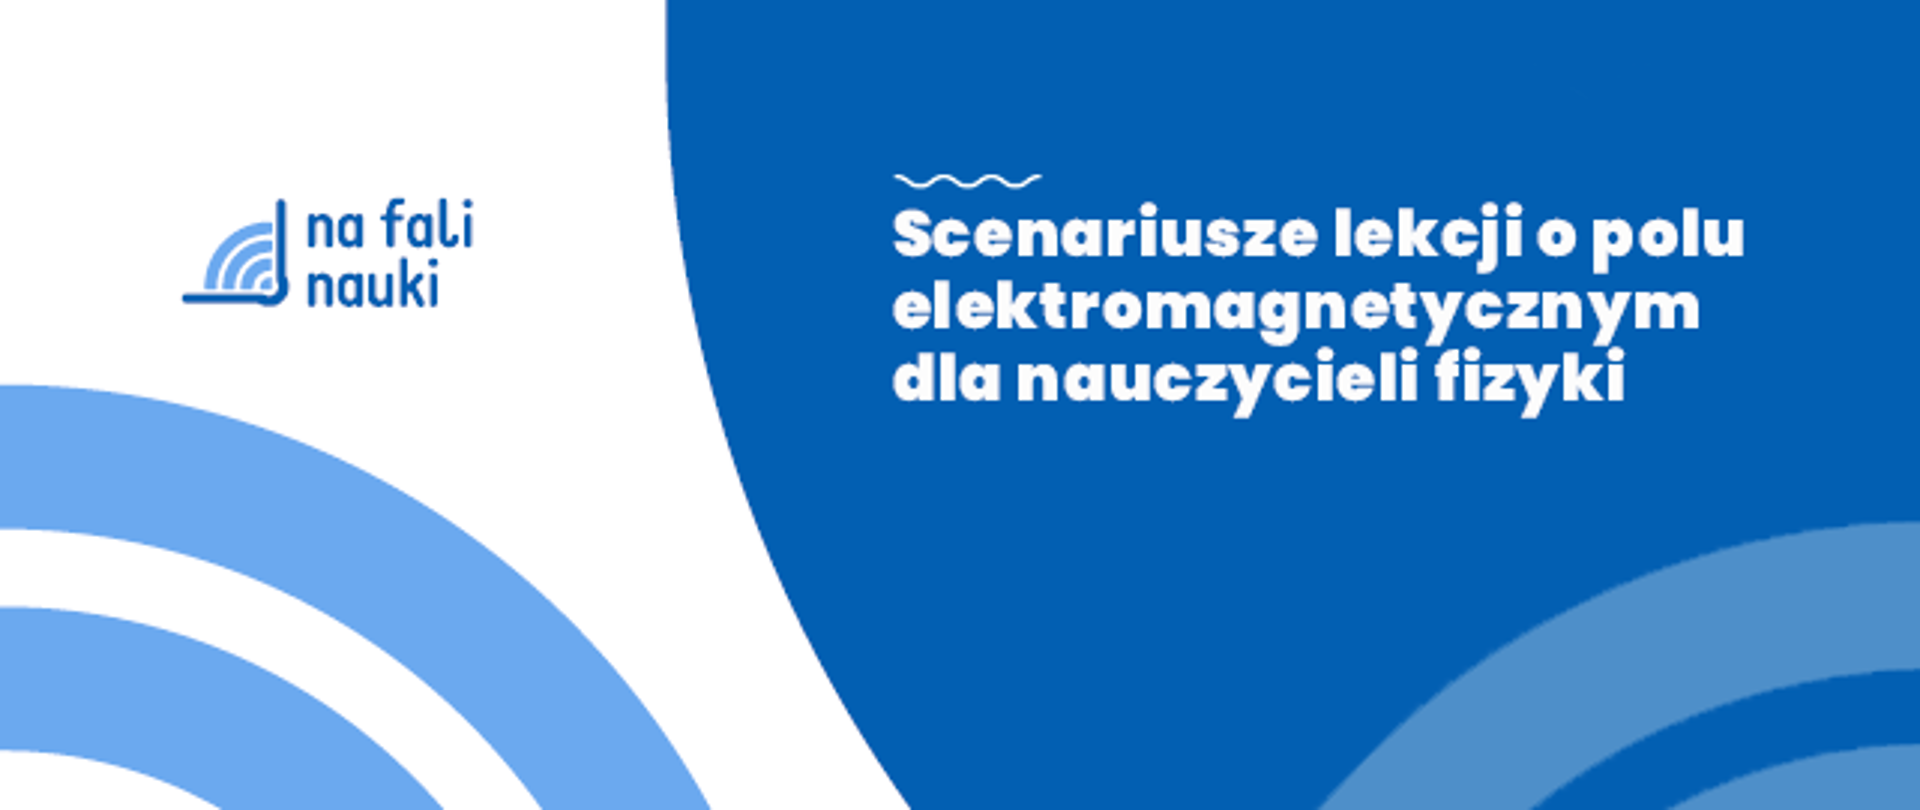 Ilustracja w kolorystyce niebiesko-białej zawierająca logo bloga Na Fali Nauki oraz napis: Scenariusze lekcji o polu elektromagnetycznym dla nauczycieli fizyki.